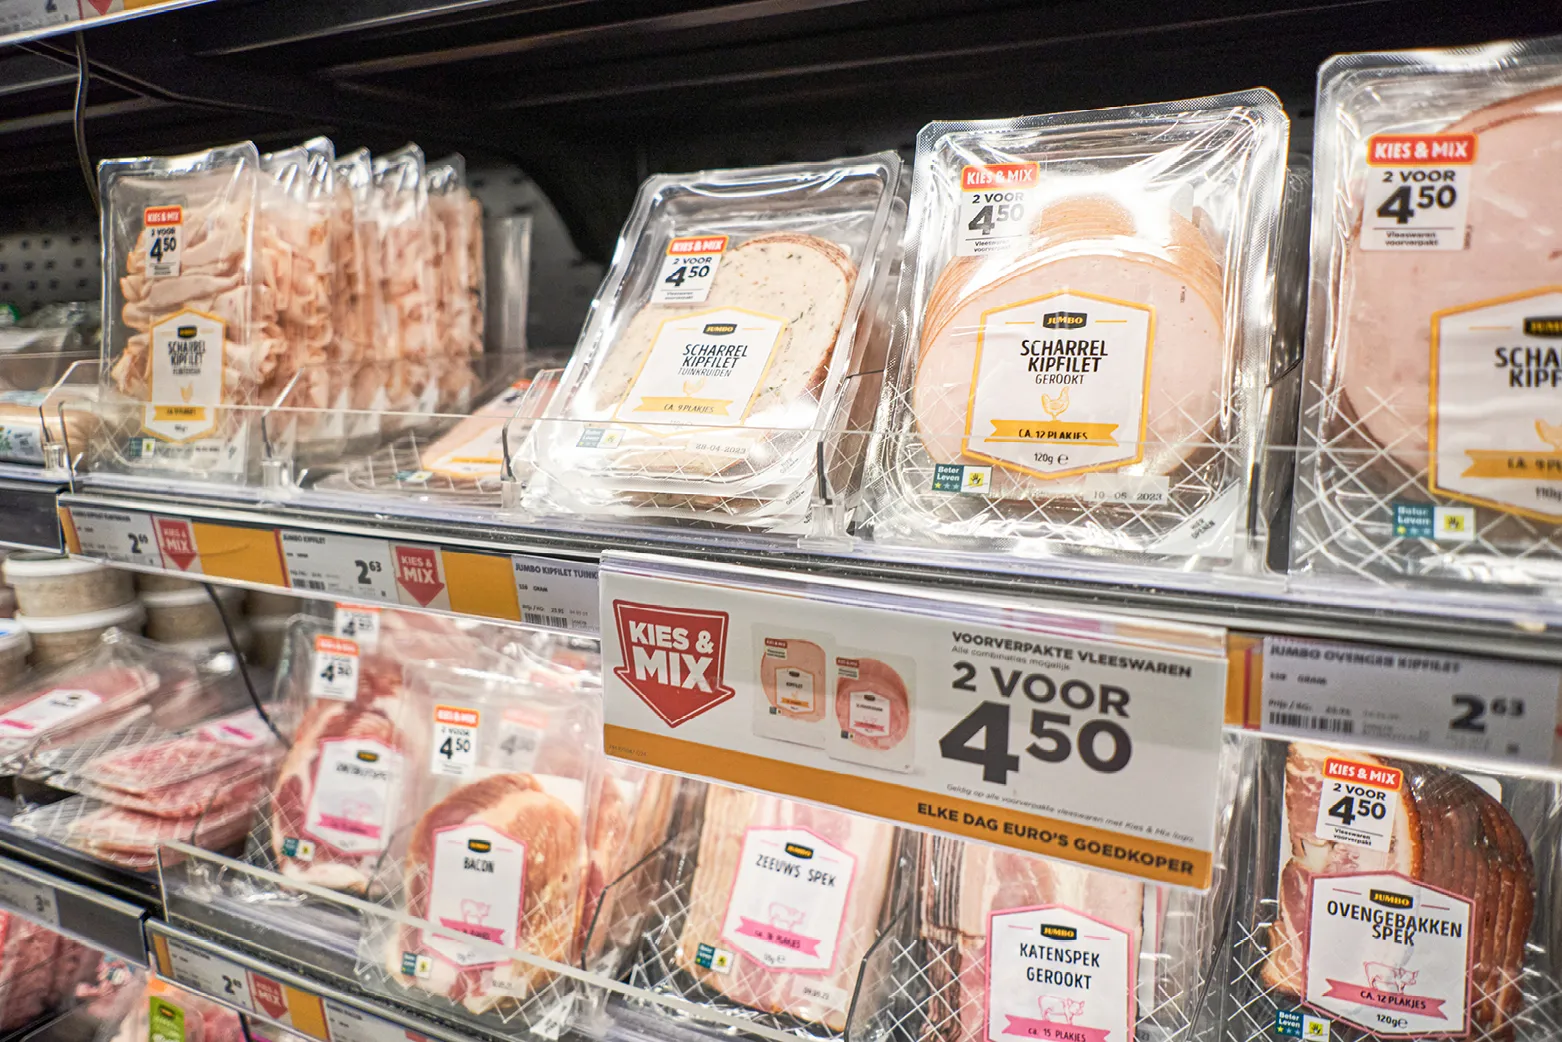 Beeld: een volumestunt voor vlees in het supermarktschap